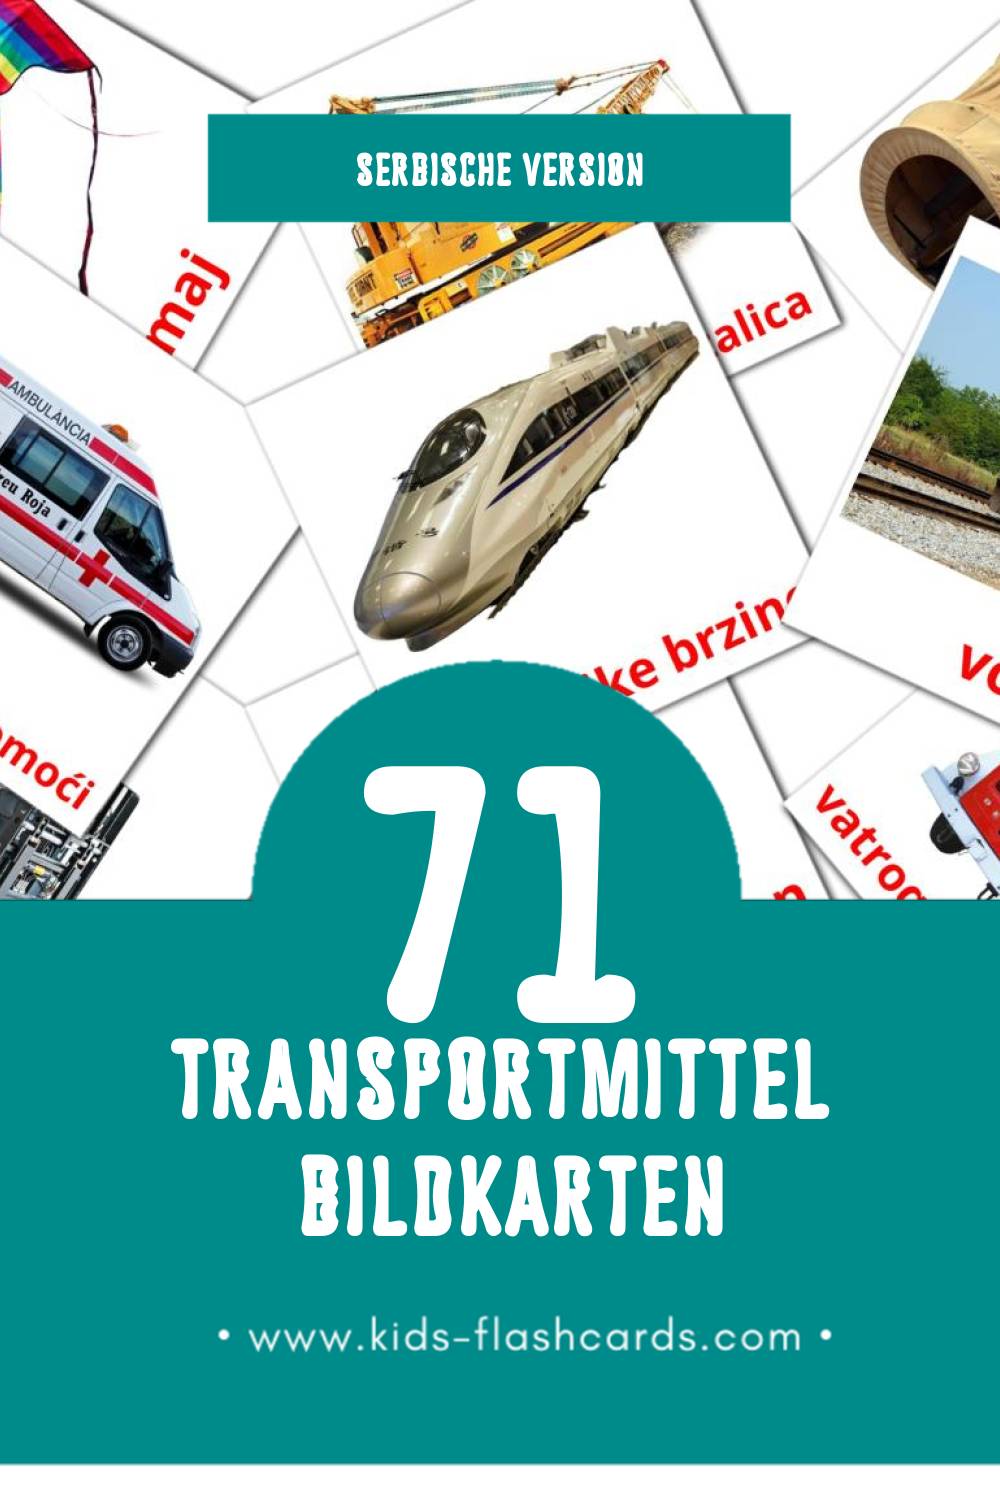 Visual Prevozna sredstva Flashcards für Kleinkinder (71 Karten in Serbisch)